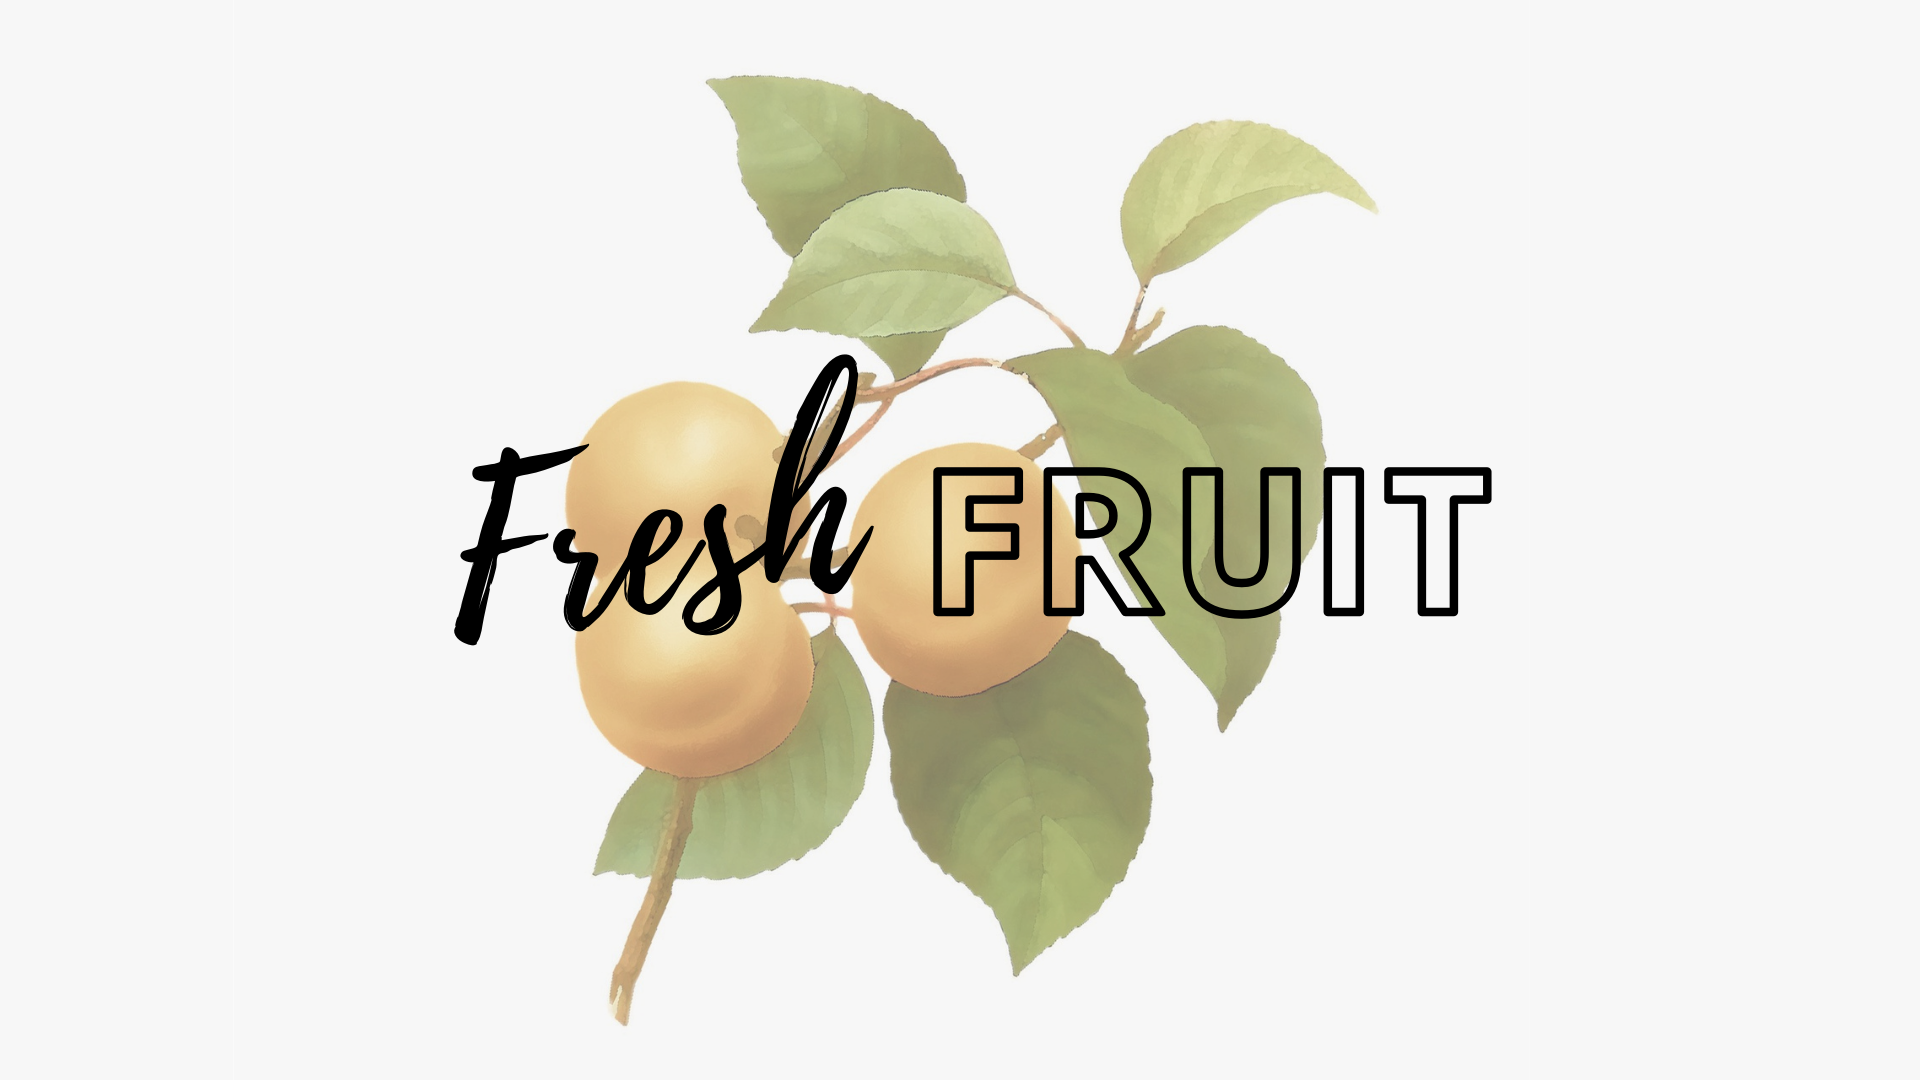 Fresh Fruit banner